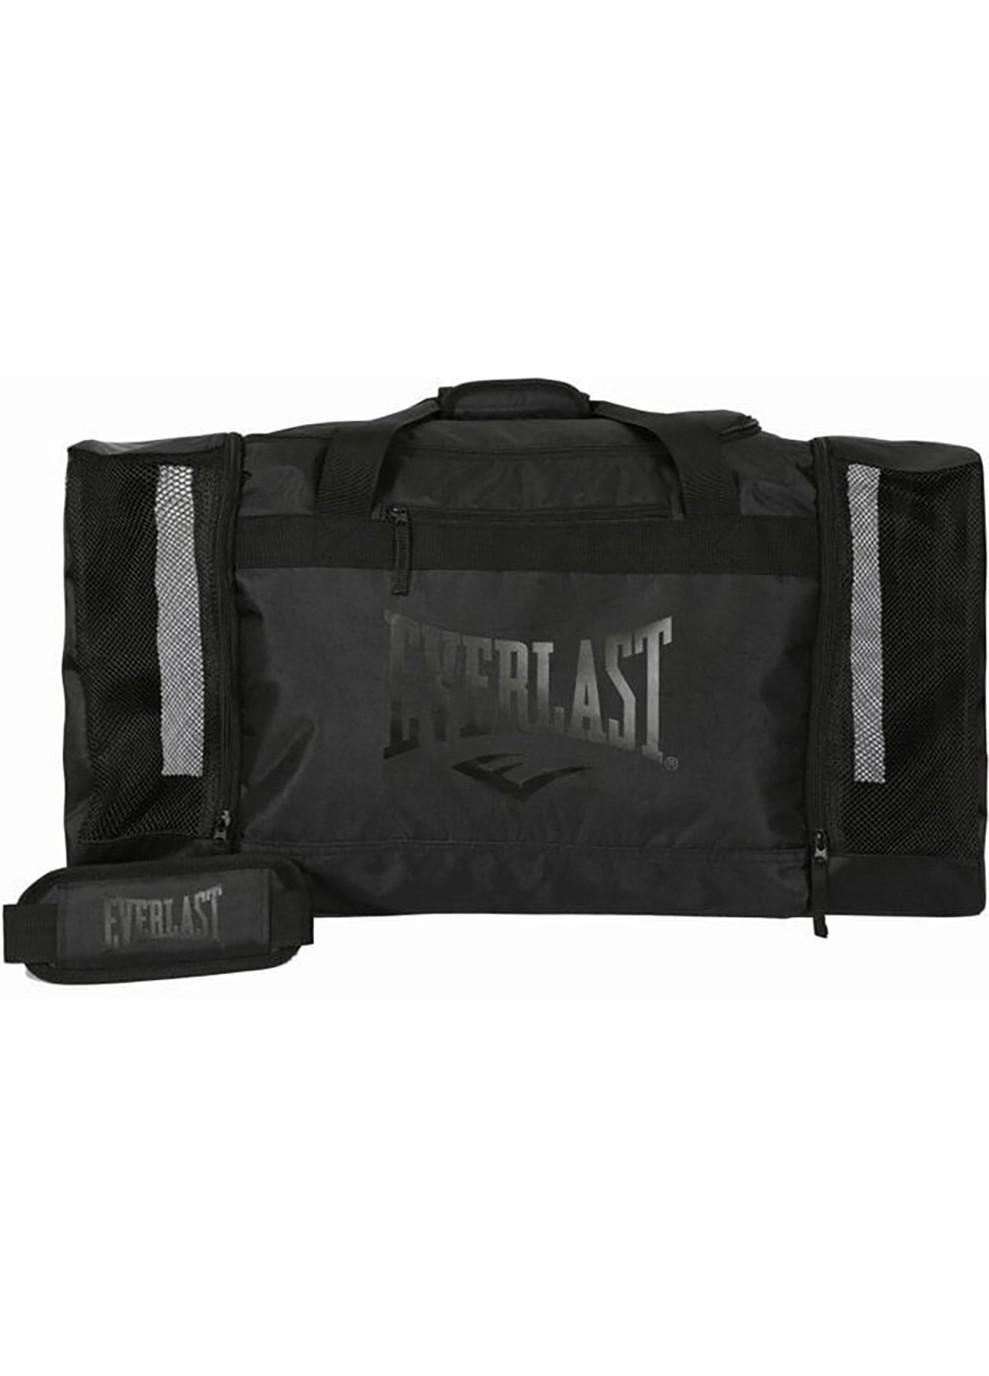 Спортивная сумка Everlast HOLDBALL Черный Aqua Speed (262451107)